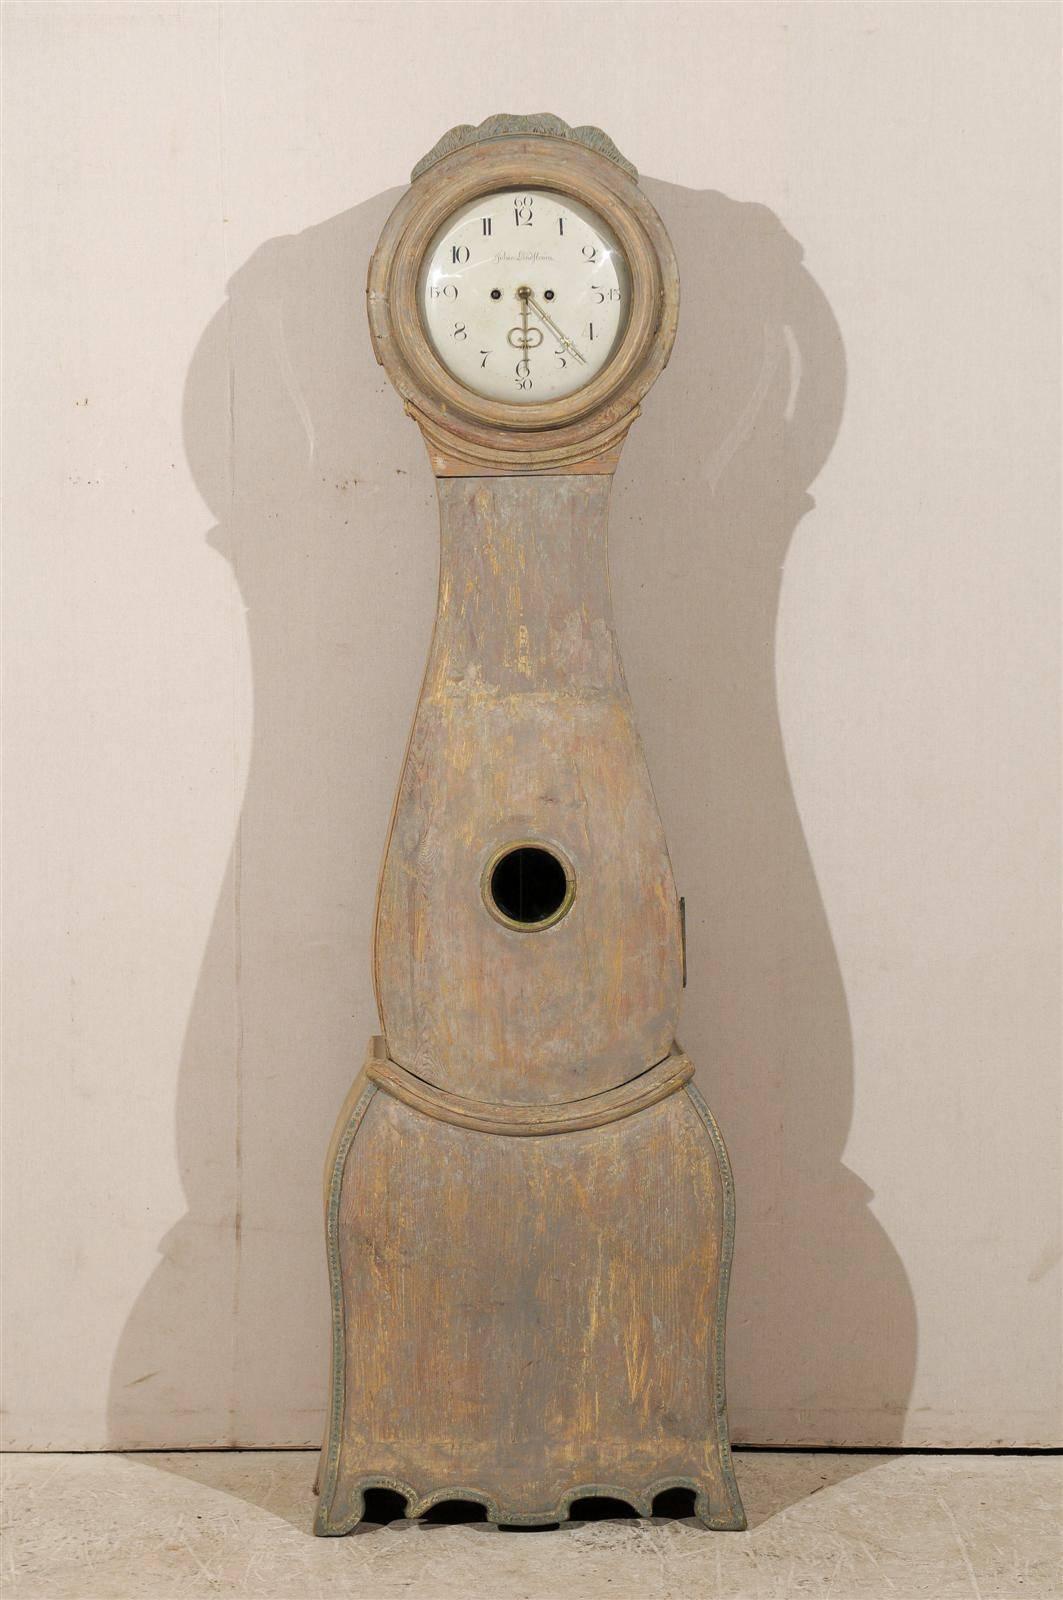 Une horloge suédoise du XVIIIe siècle avec sa peinture d'origine et son cimier délicatement sculpté. Cette horloge a conservé sa face métallique, ses aiguilles et son mouvement d'origine.  Le cadran de cette horloge suédoise est signé Johan